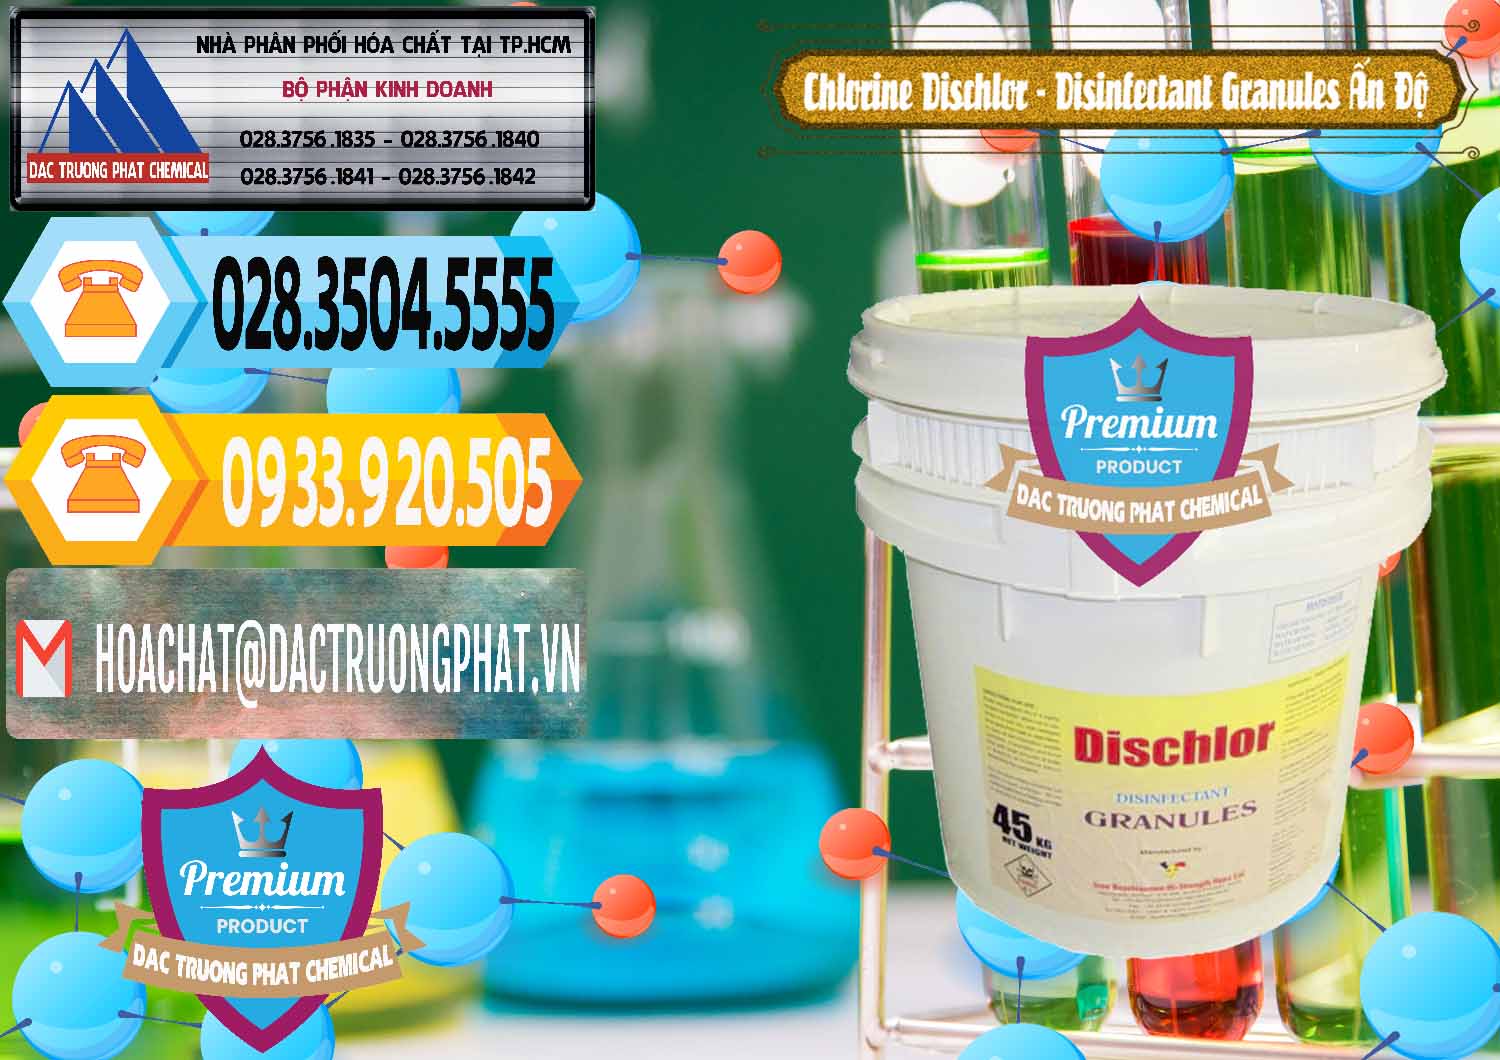 Công ty nhập khẩu & bán Chlorine – Clorin 70% Dischlor - Disinfectant Granules Ấn Độ India - 0248 - Chuyên cung cấp - nhập khẩu hóa chất tại TP.HCM - hoachattayrua.net